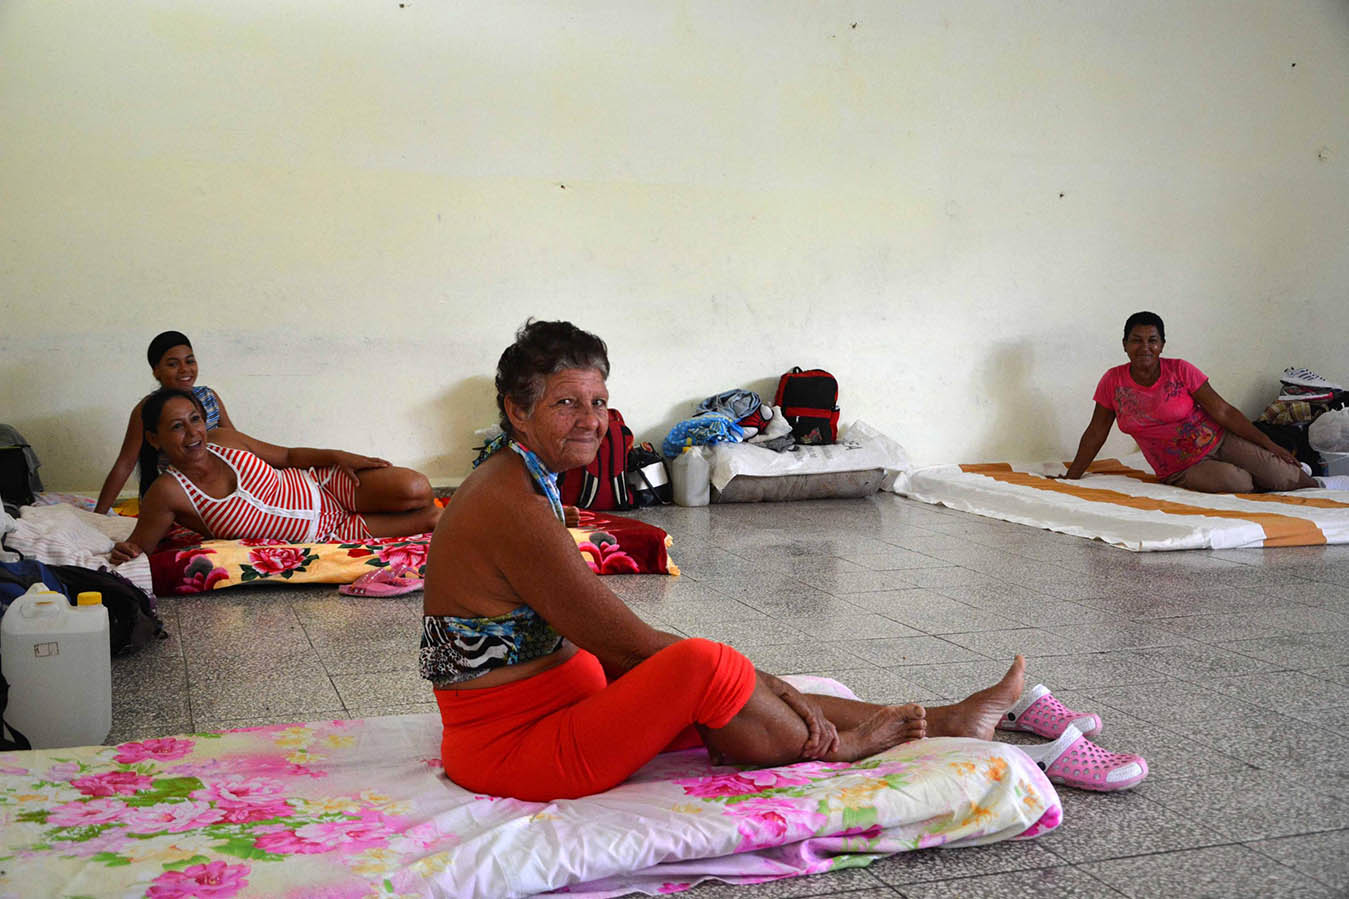 Continúan evacuados pobladores de zonas bajas del municipio de Río Cauto, debido a las inundaciones provocadas por los escurrimientos de las precipitaciones asociadas al huracán Irma, provincia Granma, Cuba, 11 de septiembre de 2017.